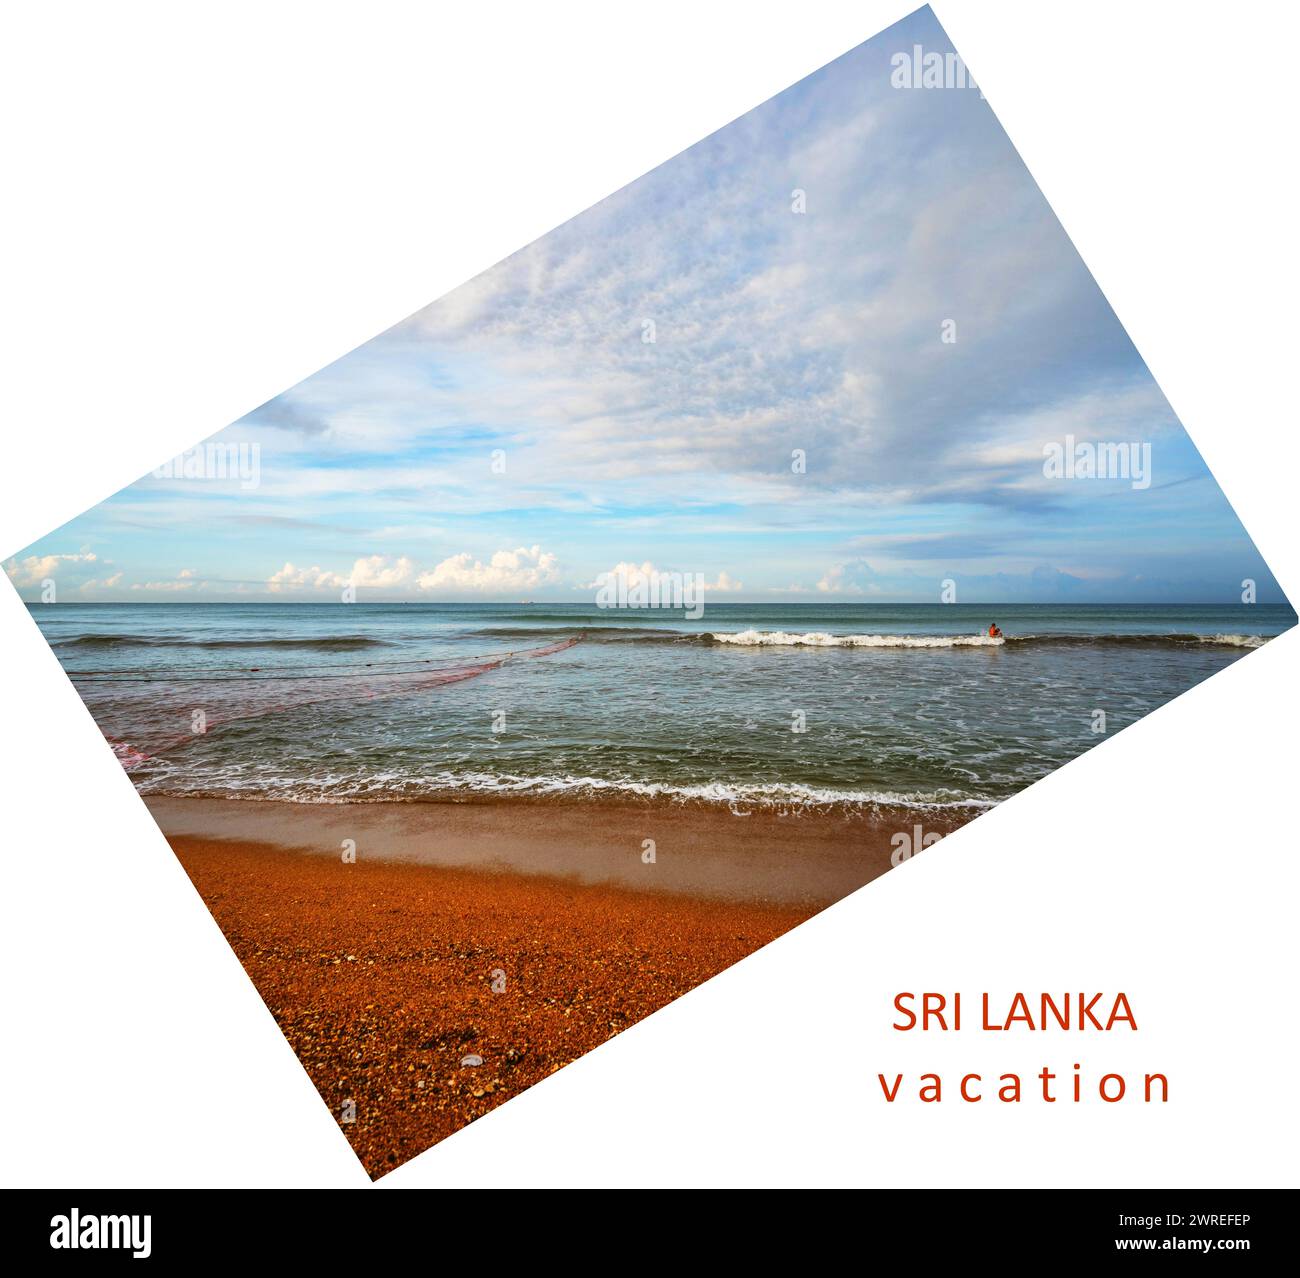 Vista della spiaggia e del mare ondulato con la rete di pescatori e l'uomo in mare. Iscrizione: Vacanza in Sri Lanka, tutto su sfondo bianco, la foto è girata in un angolo. Foto Stock